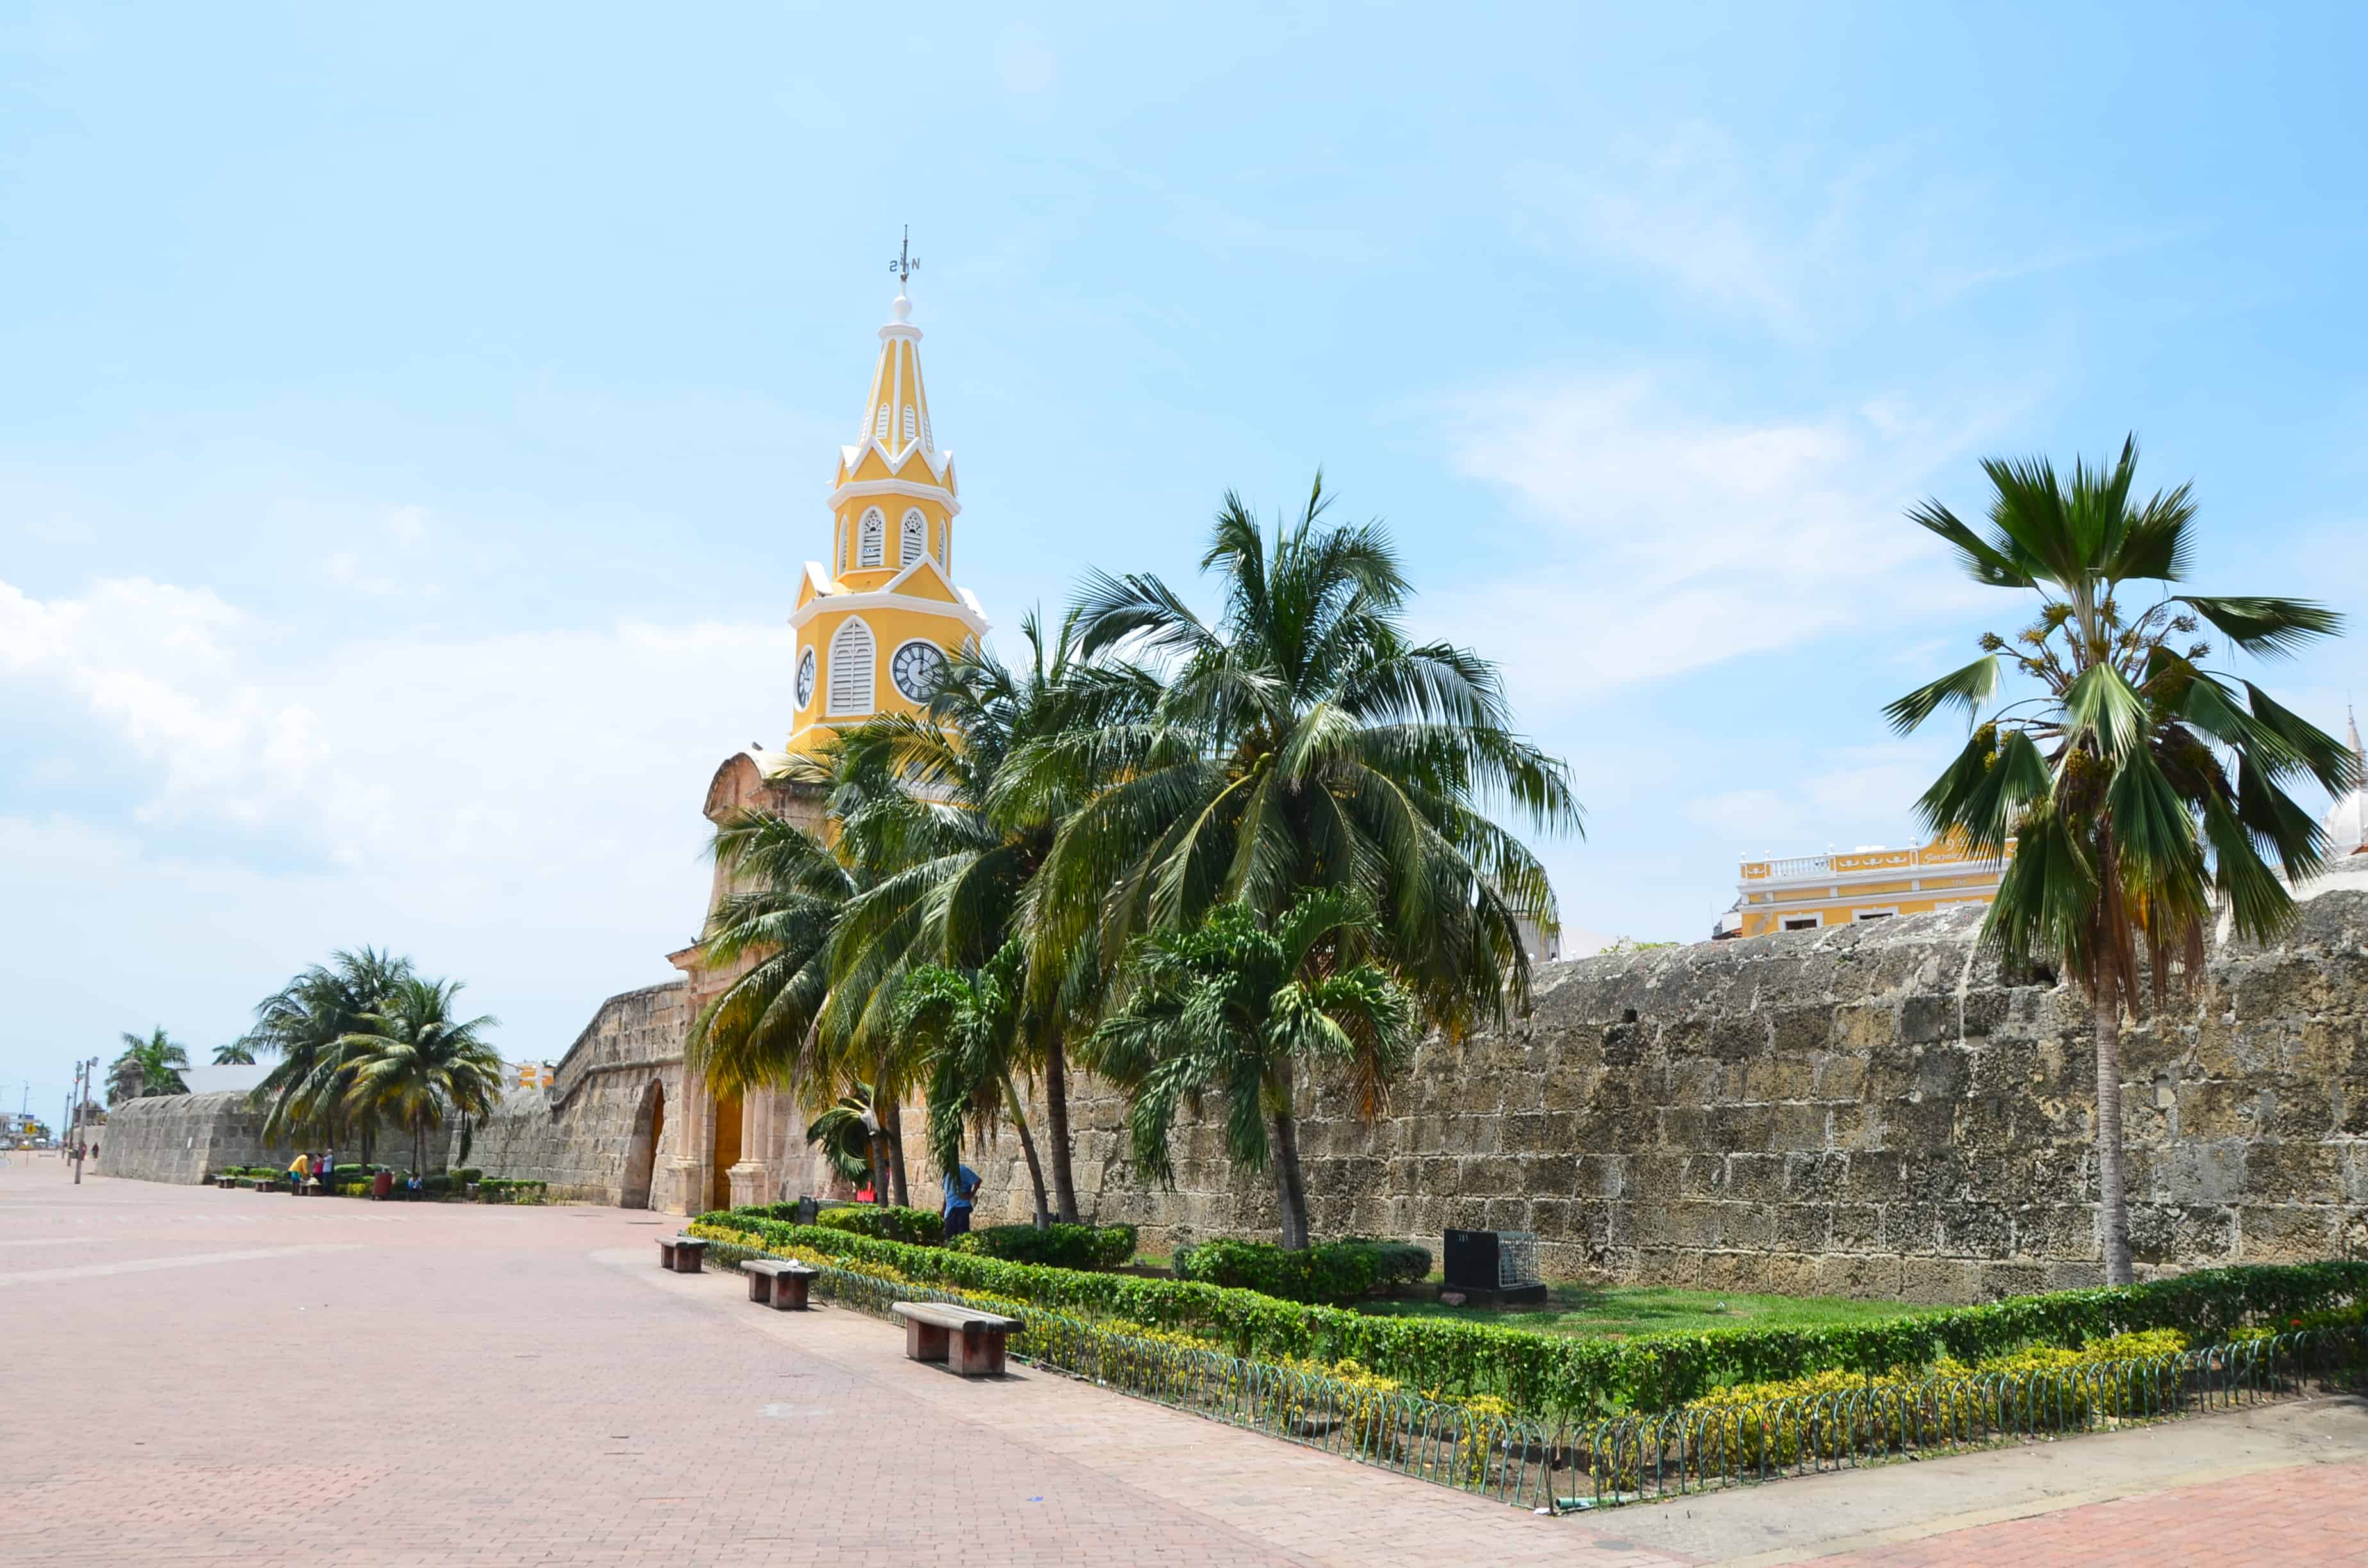 Puerta del Reloj on the Walls of Cartagena, Colombia